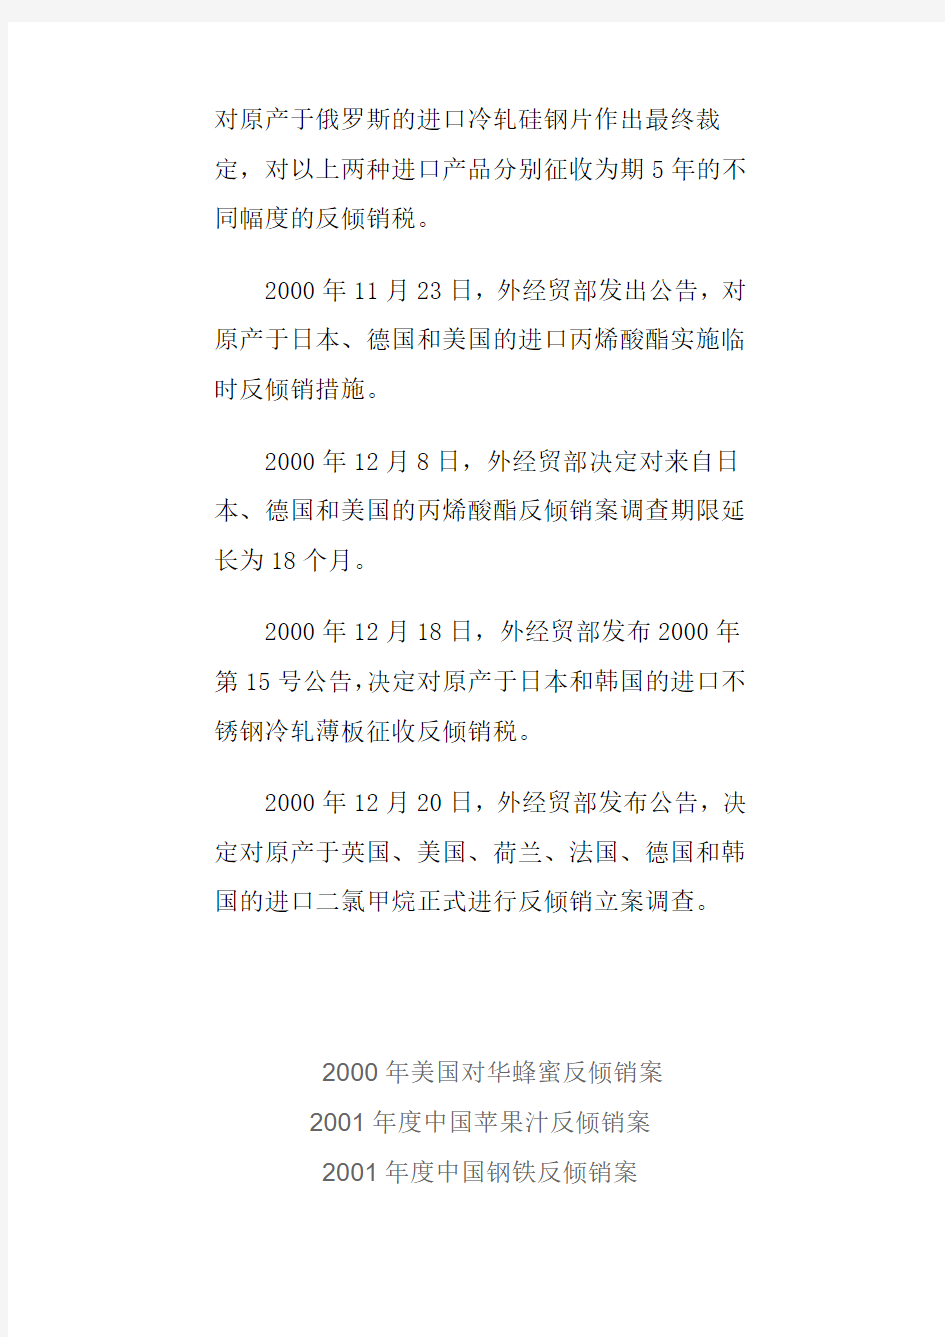 2000~2012年中国反倾销案备忘录